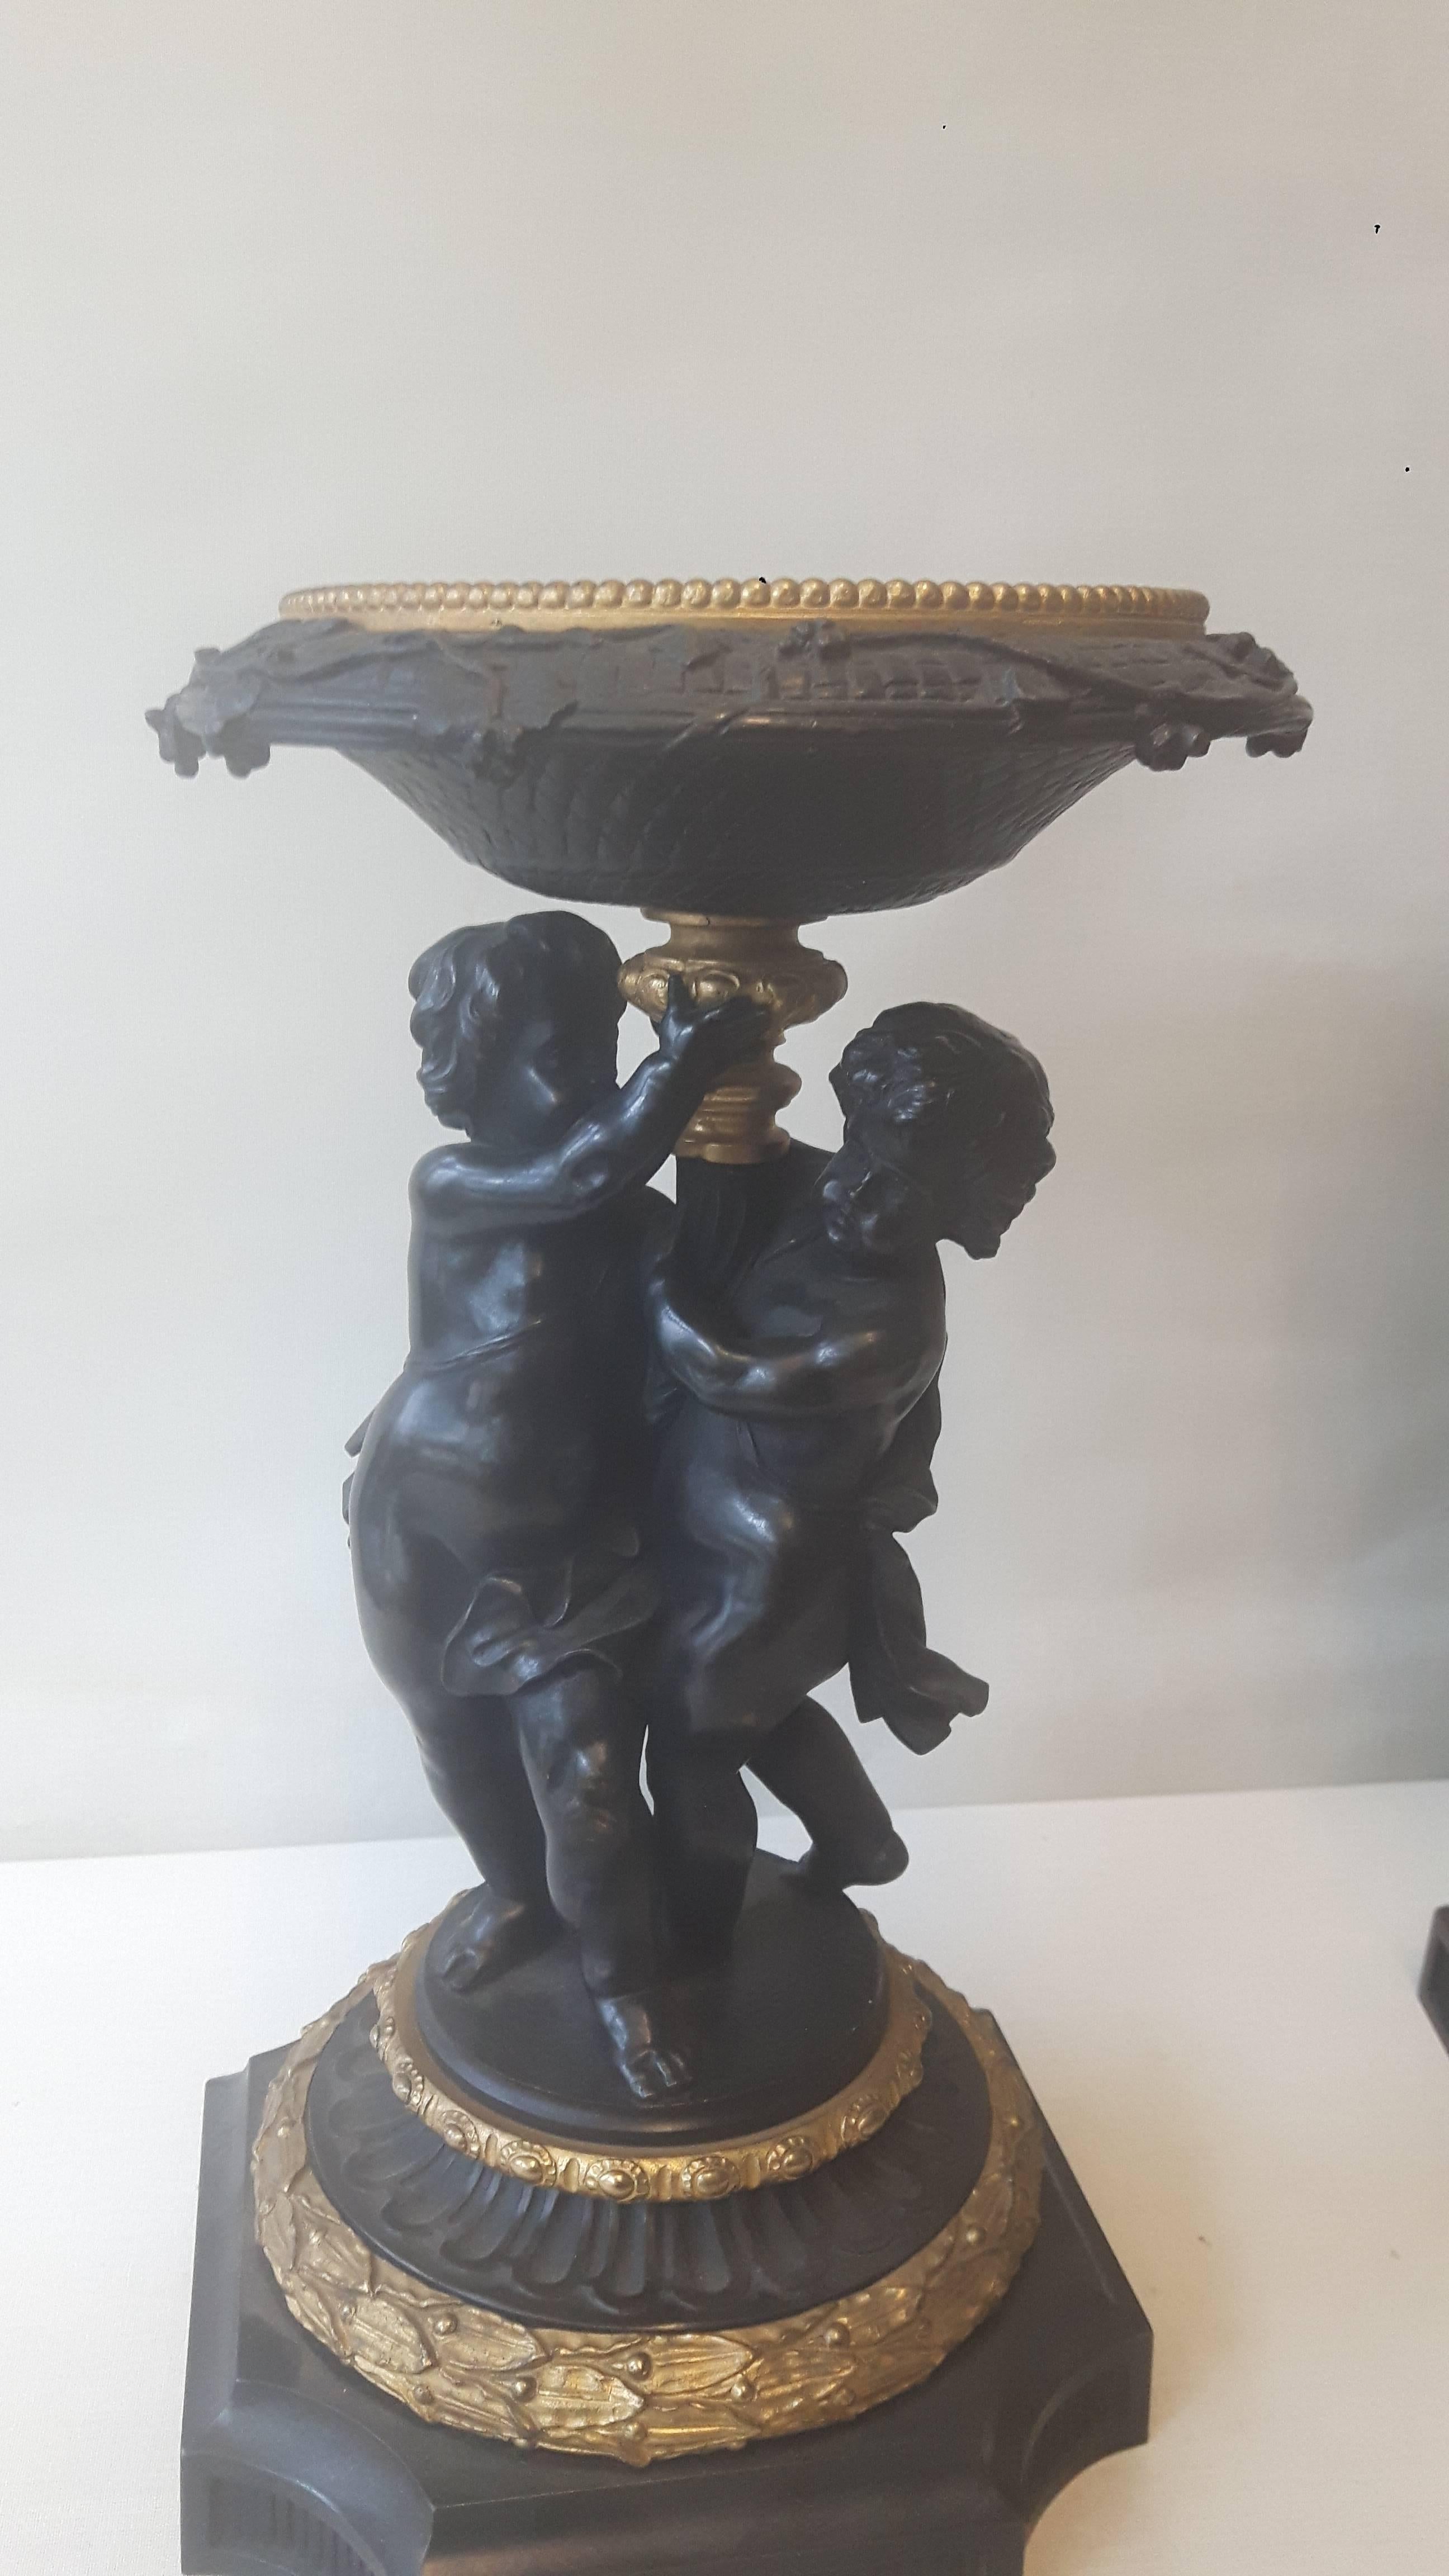 Paire de tazzas en bronze et en bronze doré dans le style italien du XVIIe siècle, chaque tazza étant gravé de scènes mythologiques, soutenues par une colonne et deux putti, à la manière du 